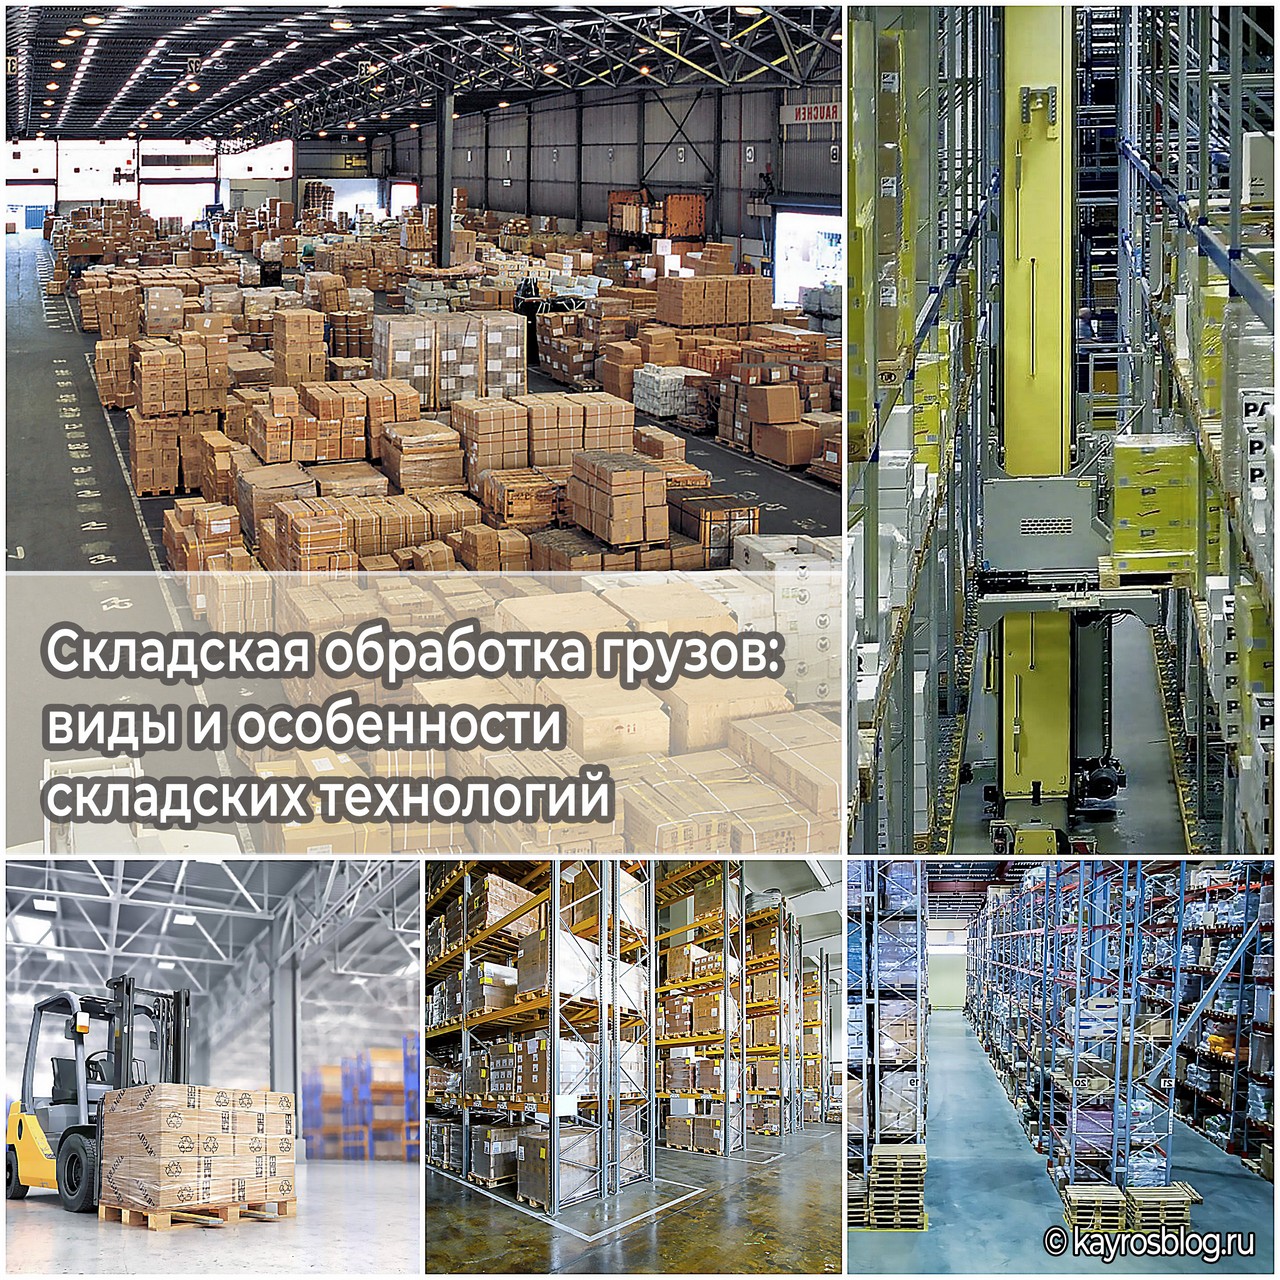 Cкладская обработка грузов виды и особенности складских технологий